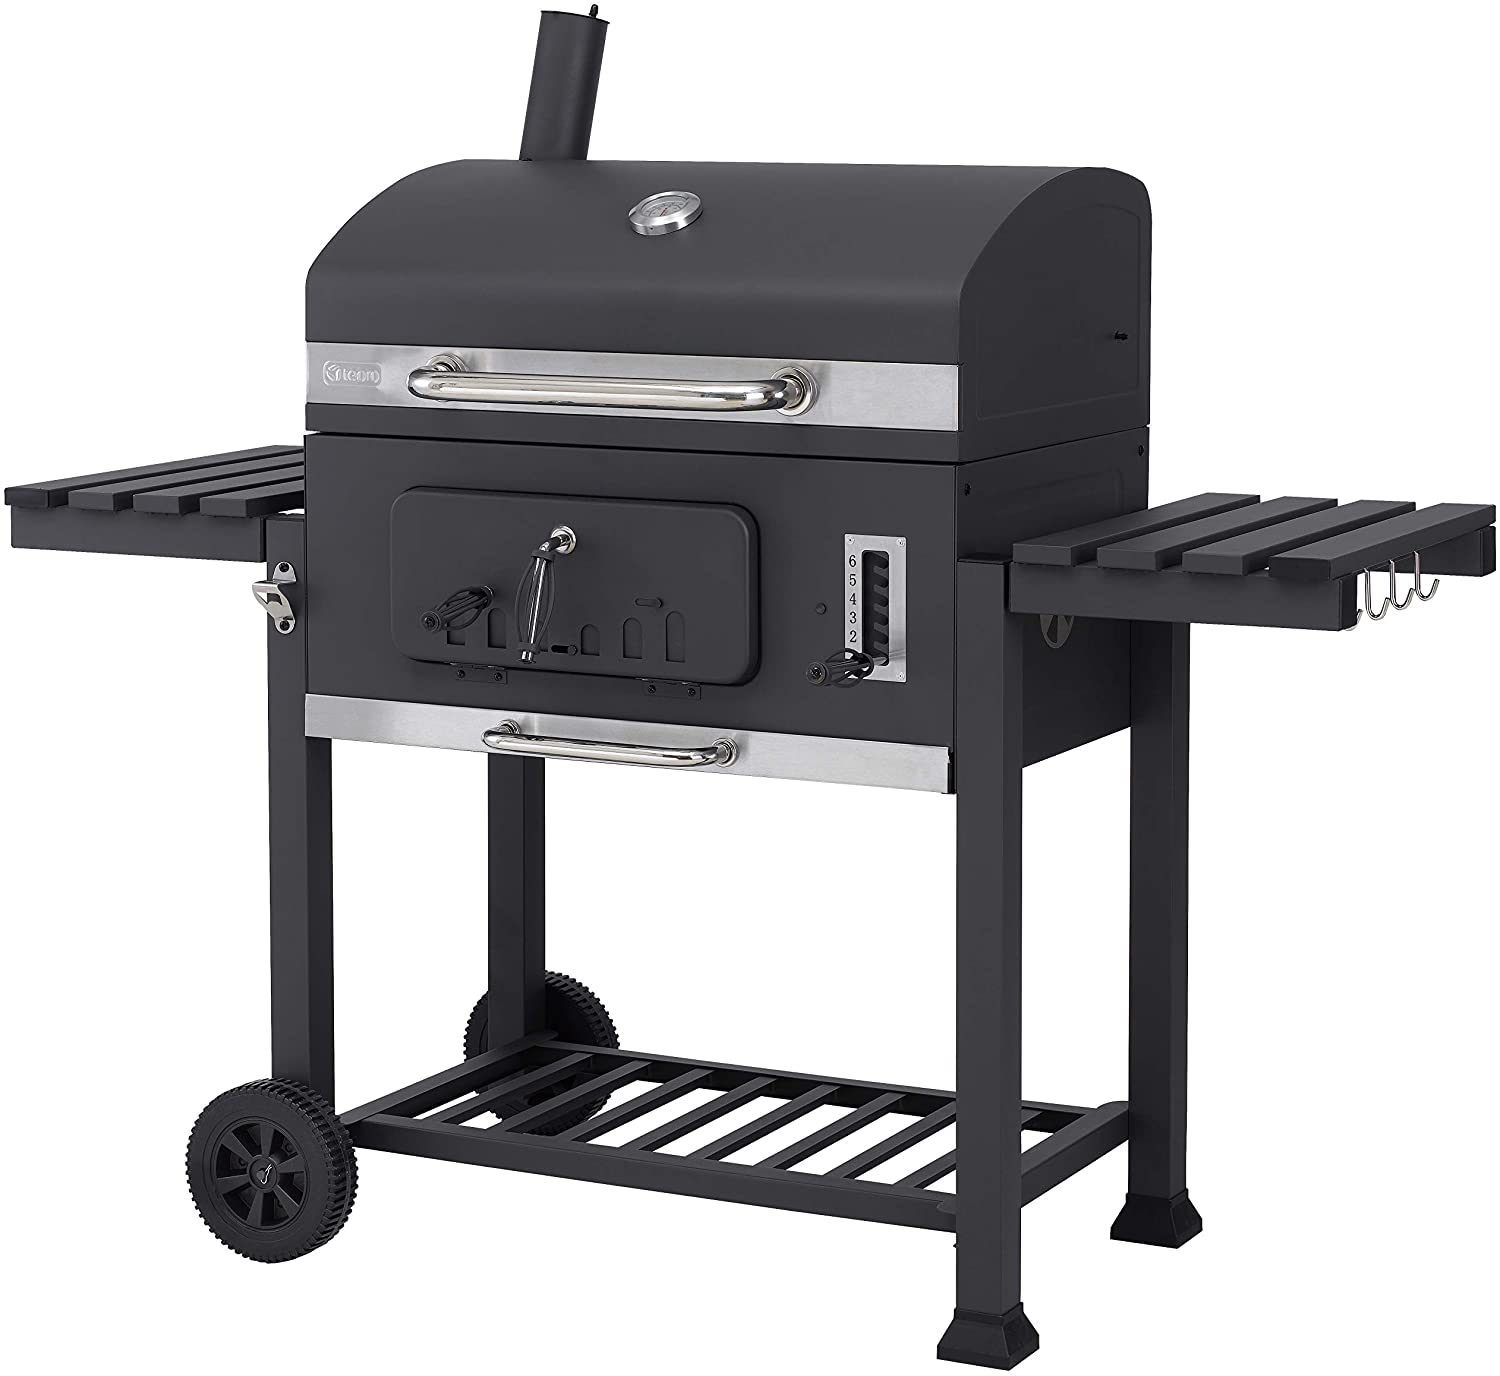 Tepro Toronto XXL 2019 Carrello per barbecue in acciaio INOX colore Antracite 🥓 Barbecue a Carbonella🍗 Tepro Toronto Click: il miglior barbecue a carbonella qualità-prezzo